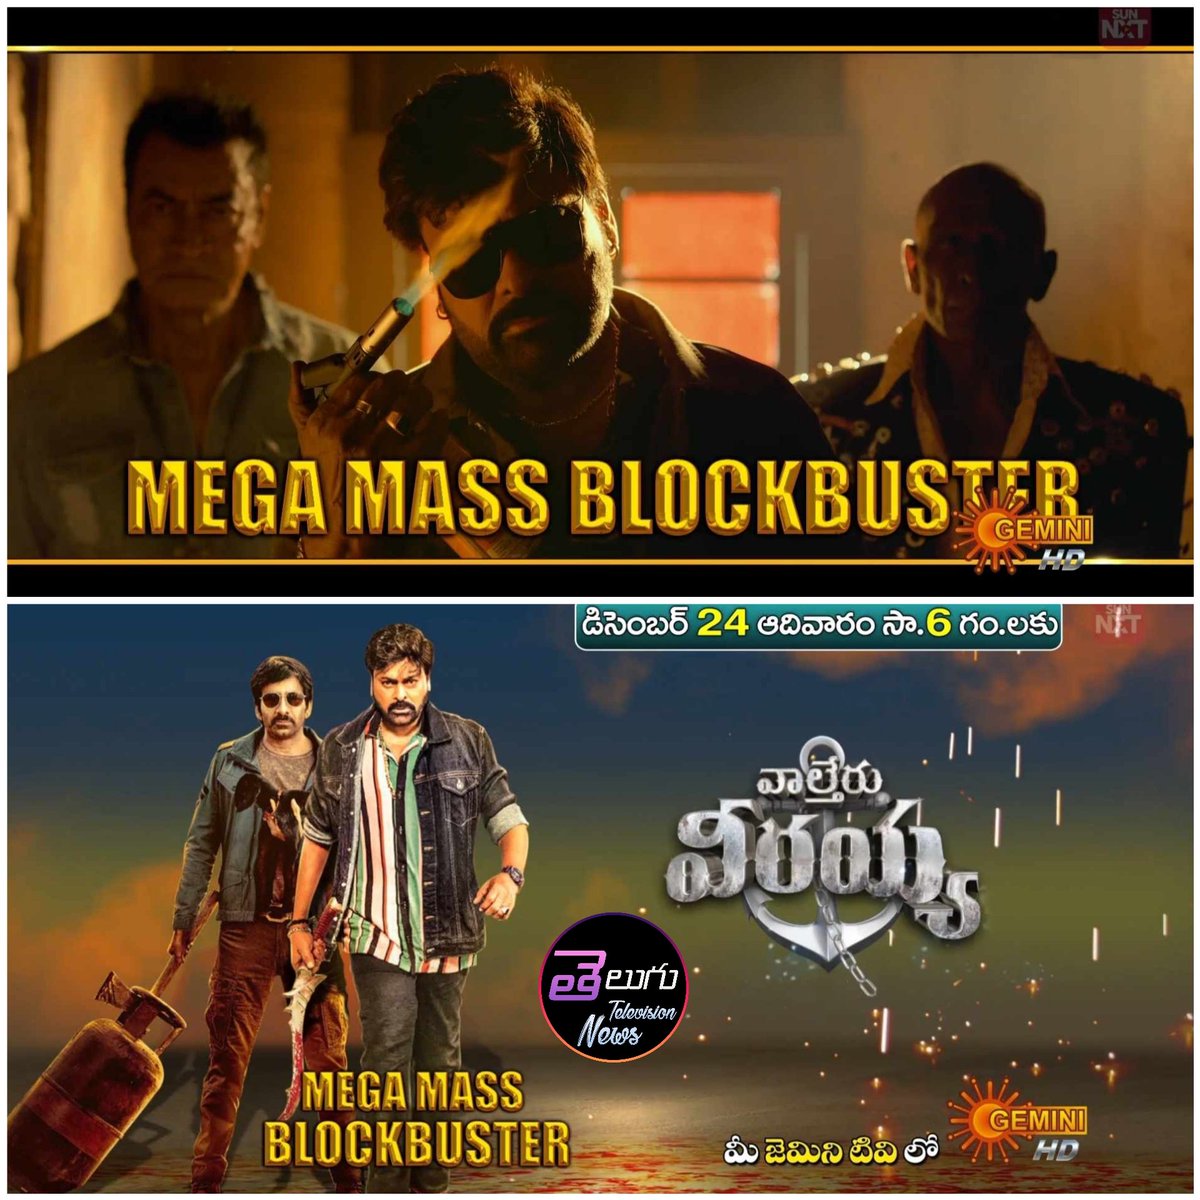 Mega Mass Blockbuster
#WaltairVeerayya 
Next Sunday At 6pm On #GeminiTV 

#Chiranjeevi #RaviTeja #ShrutiHaasan #PrakashRaj #BobbySimha #Mega156 #MrBachchan